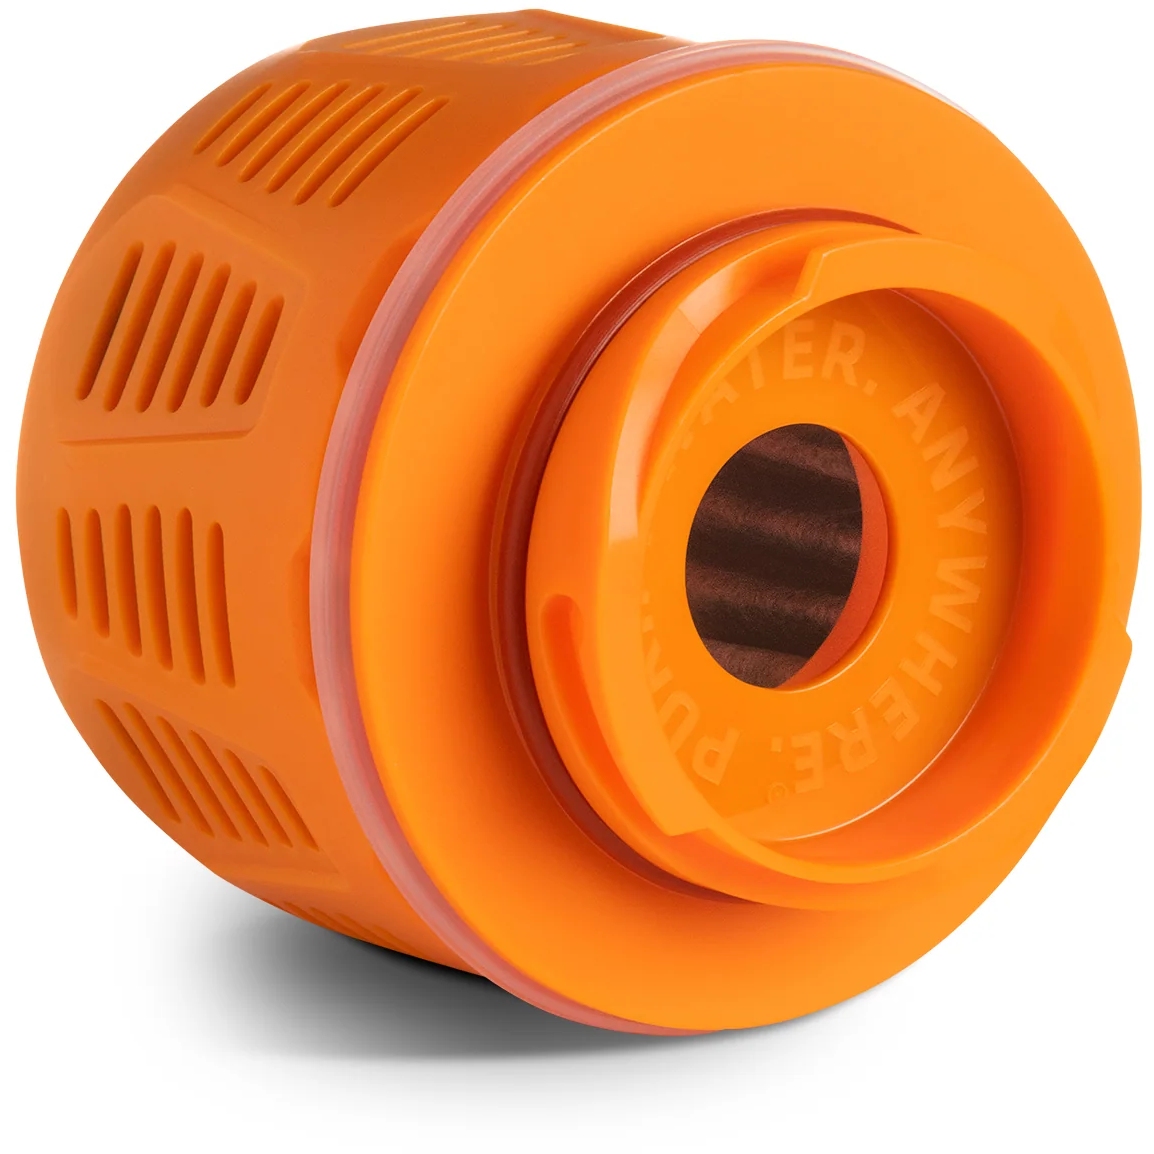 Productfoto van Grayl GeoPress Vervangend Reinigingspatroon met Optionele Filterinzet - oranje